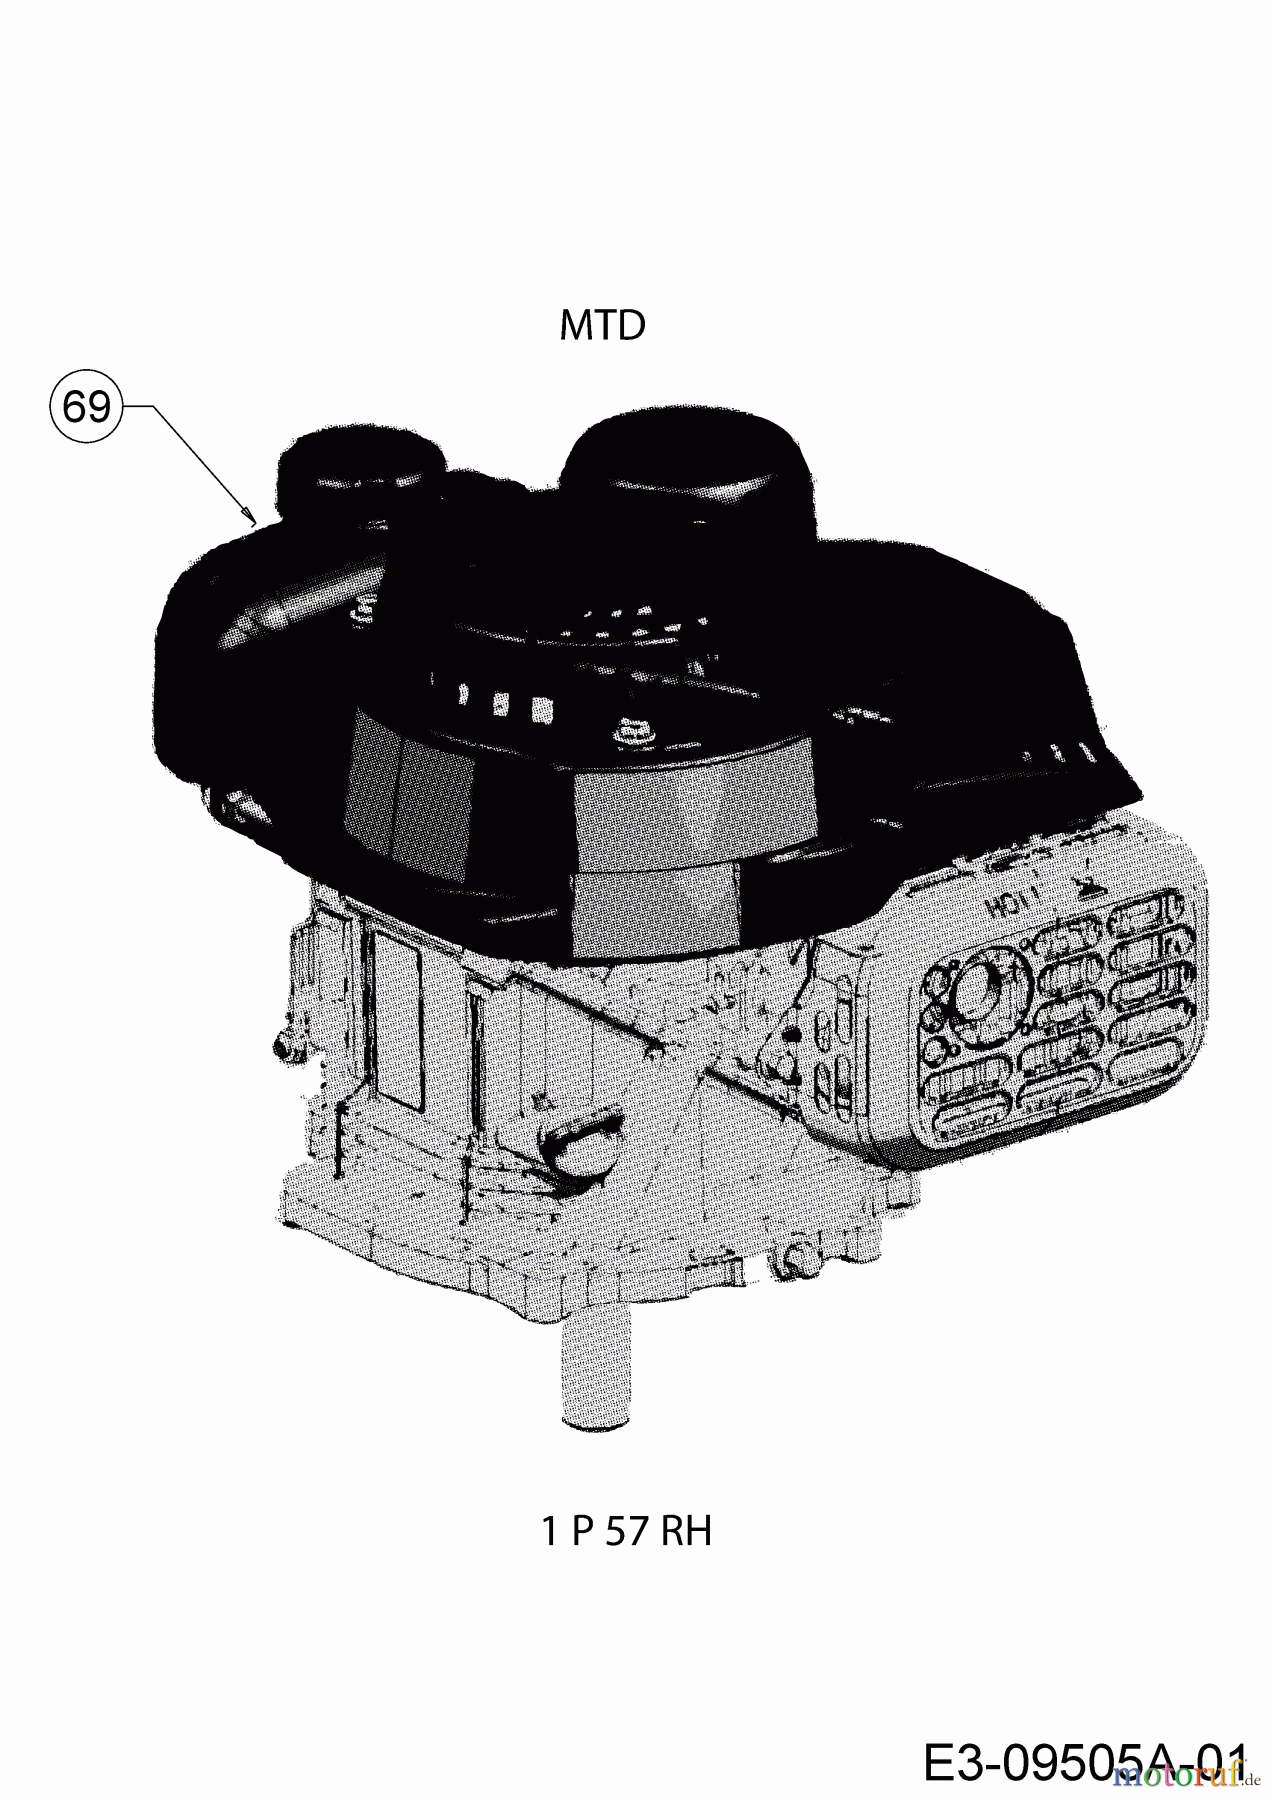  MTD Motormäher DL 46 P 11A-J1SJ677  (2016) Motor MTD